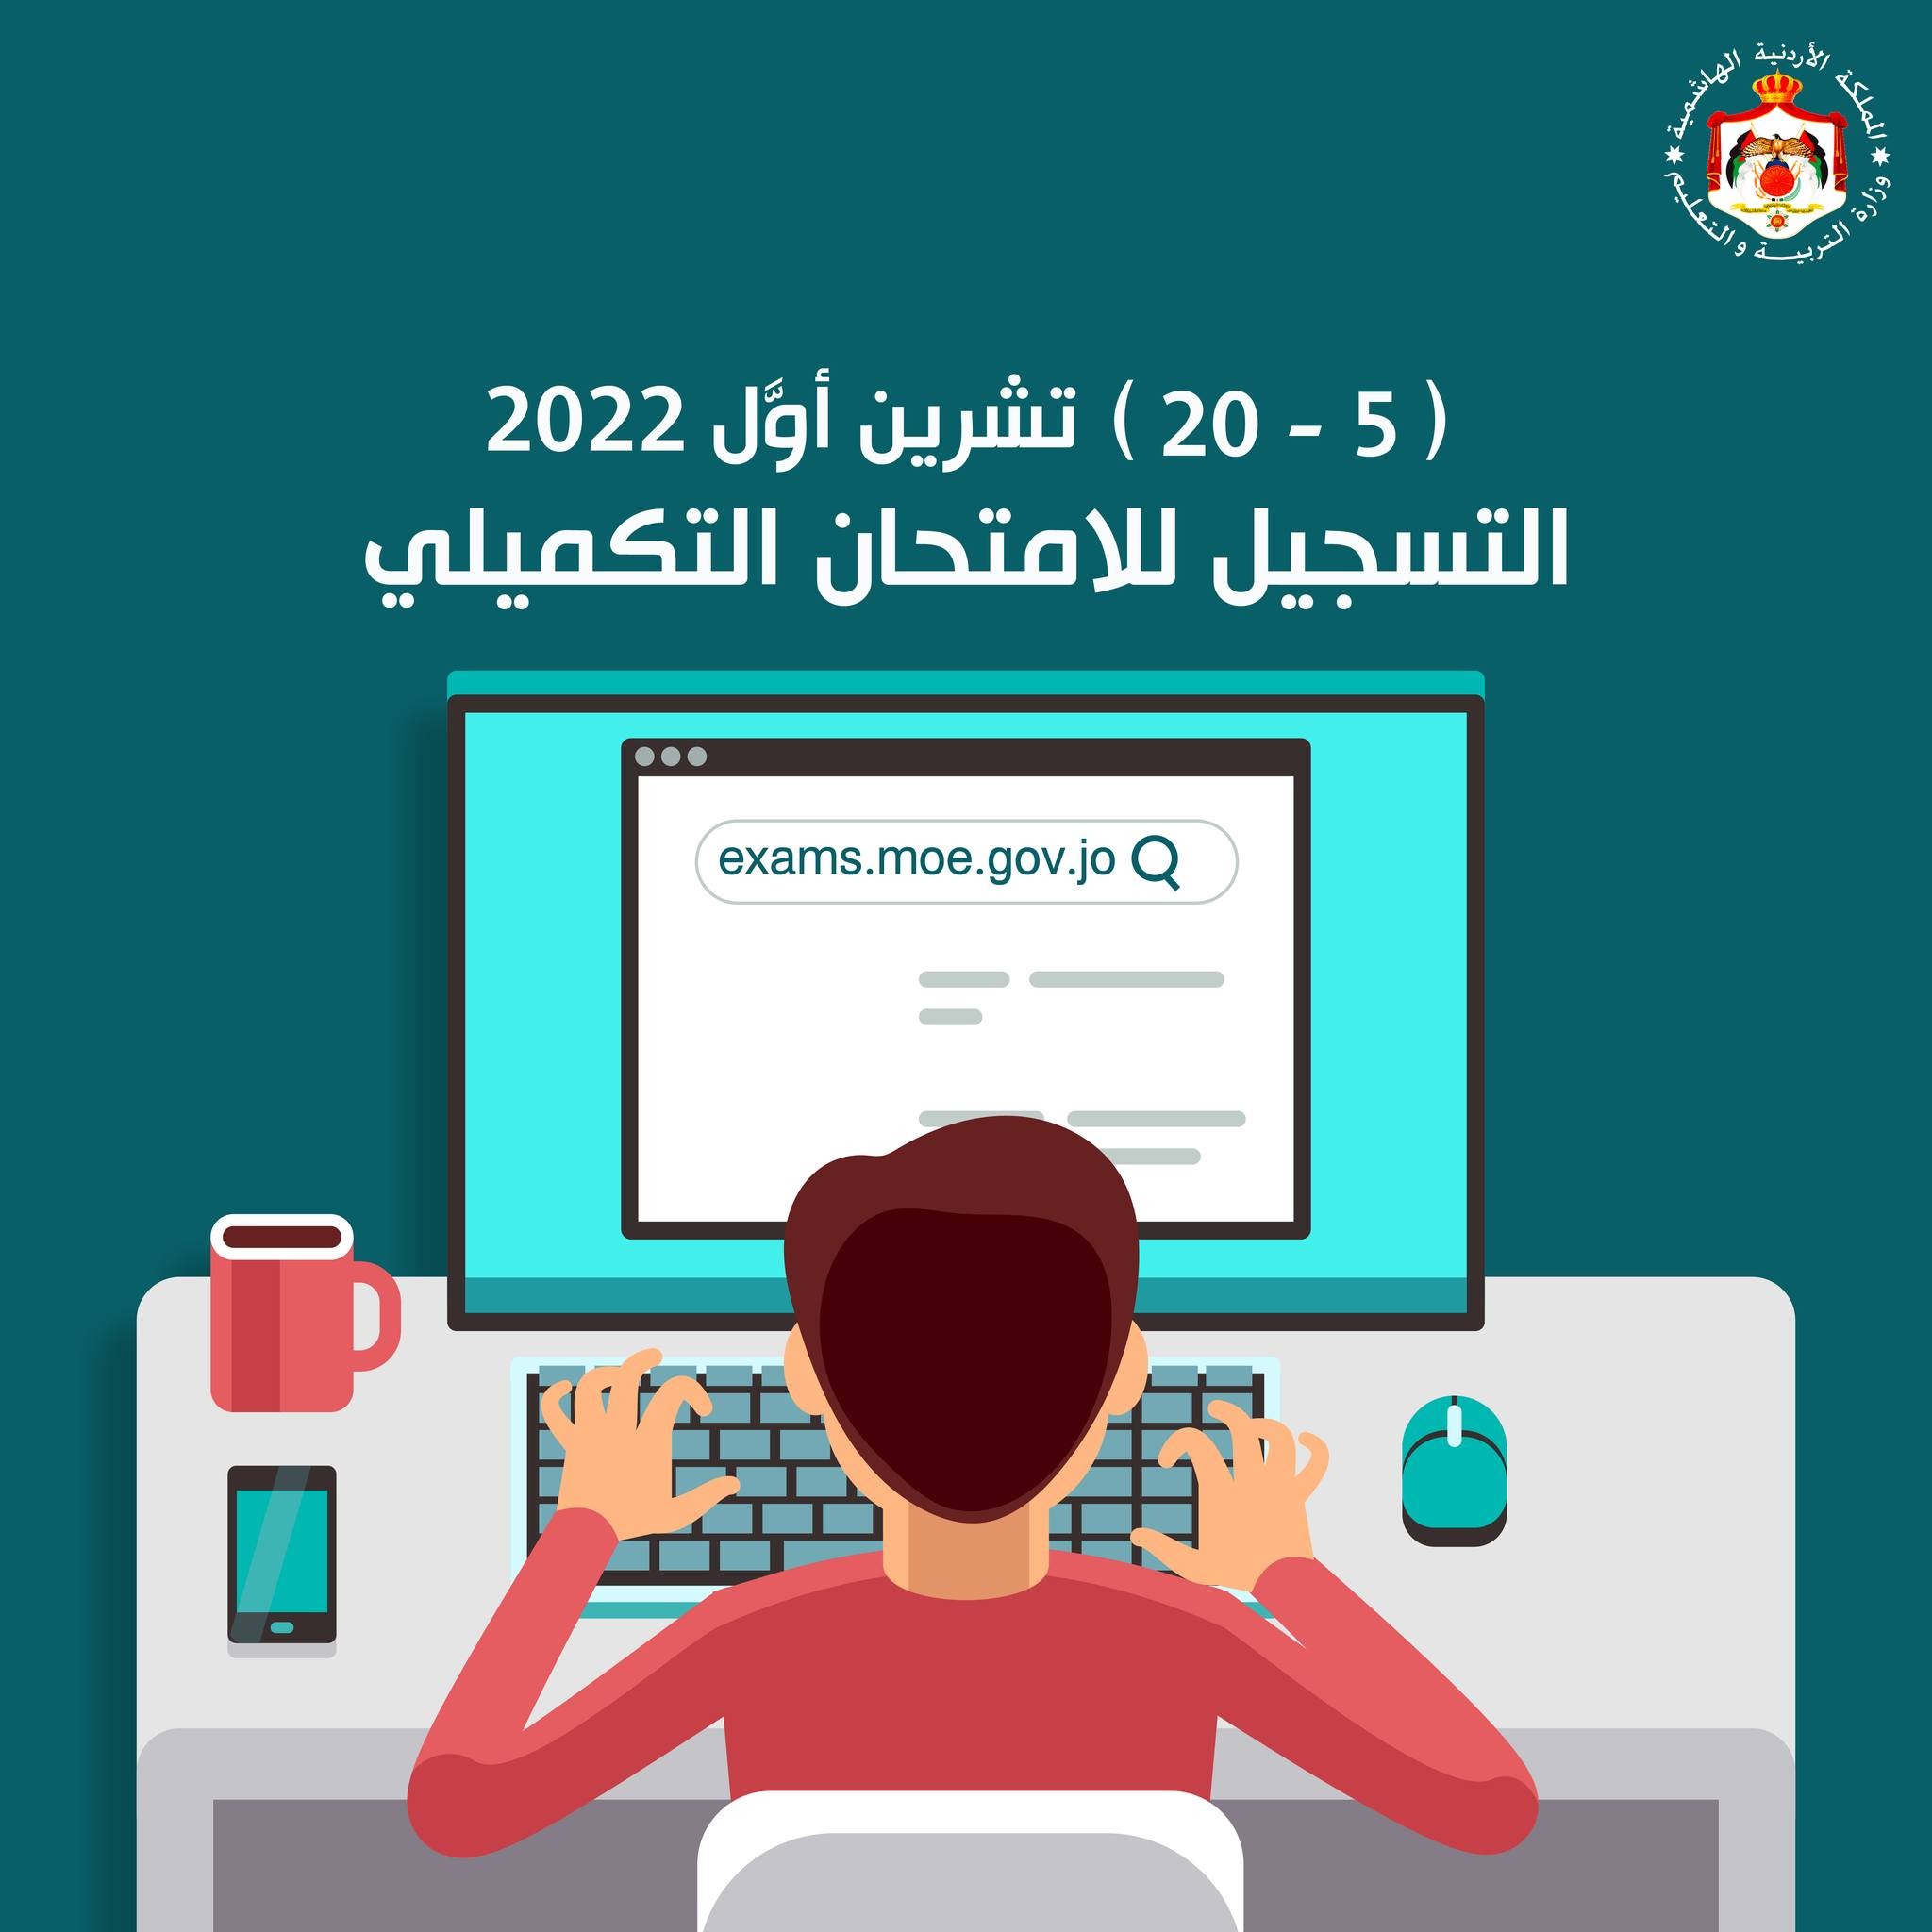 رابط صفحة التسجيل لامتحان شهادة الدراسة الثانوية العامة في الأردن- الامتحان التكميلي 2022.JPG